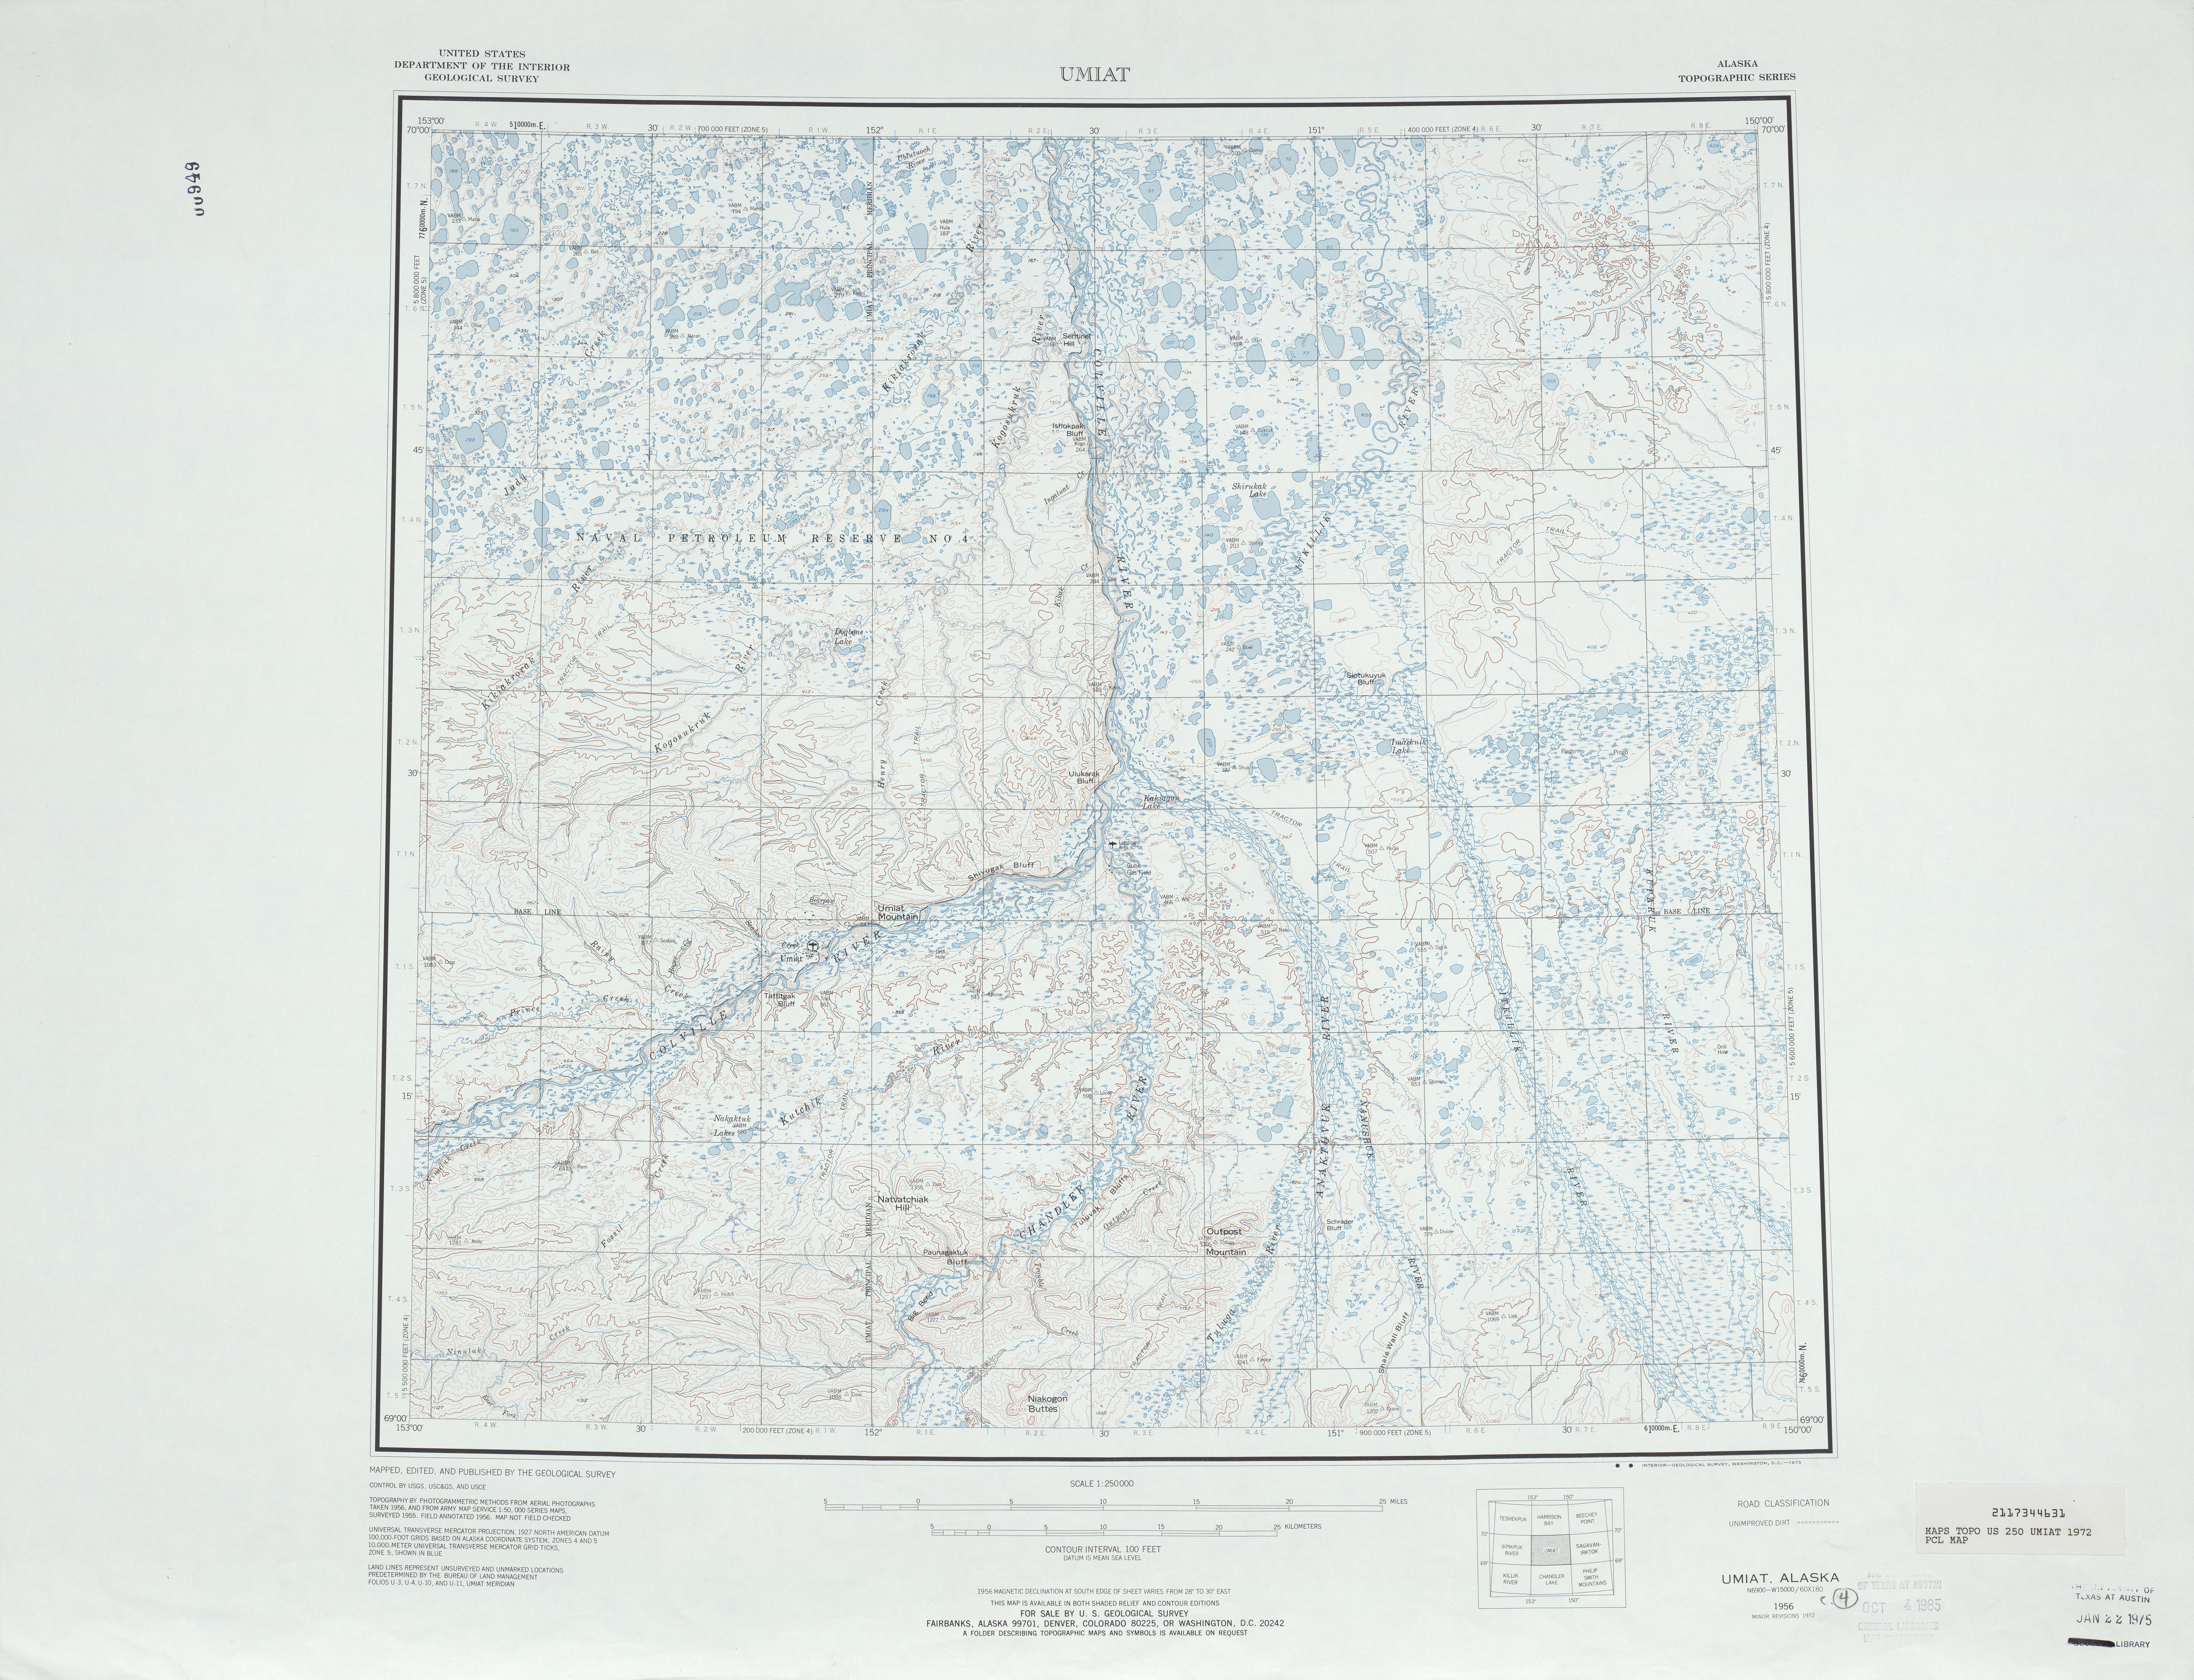 Hoja Umiat del Mapa Topográfico de los Estados Unidos 1972